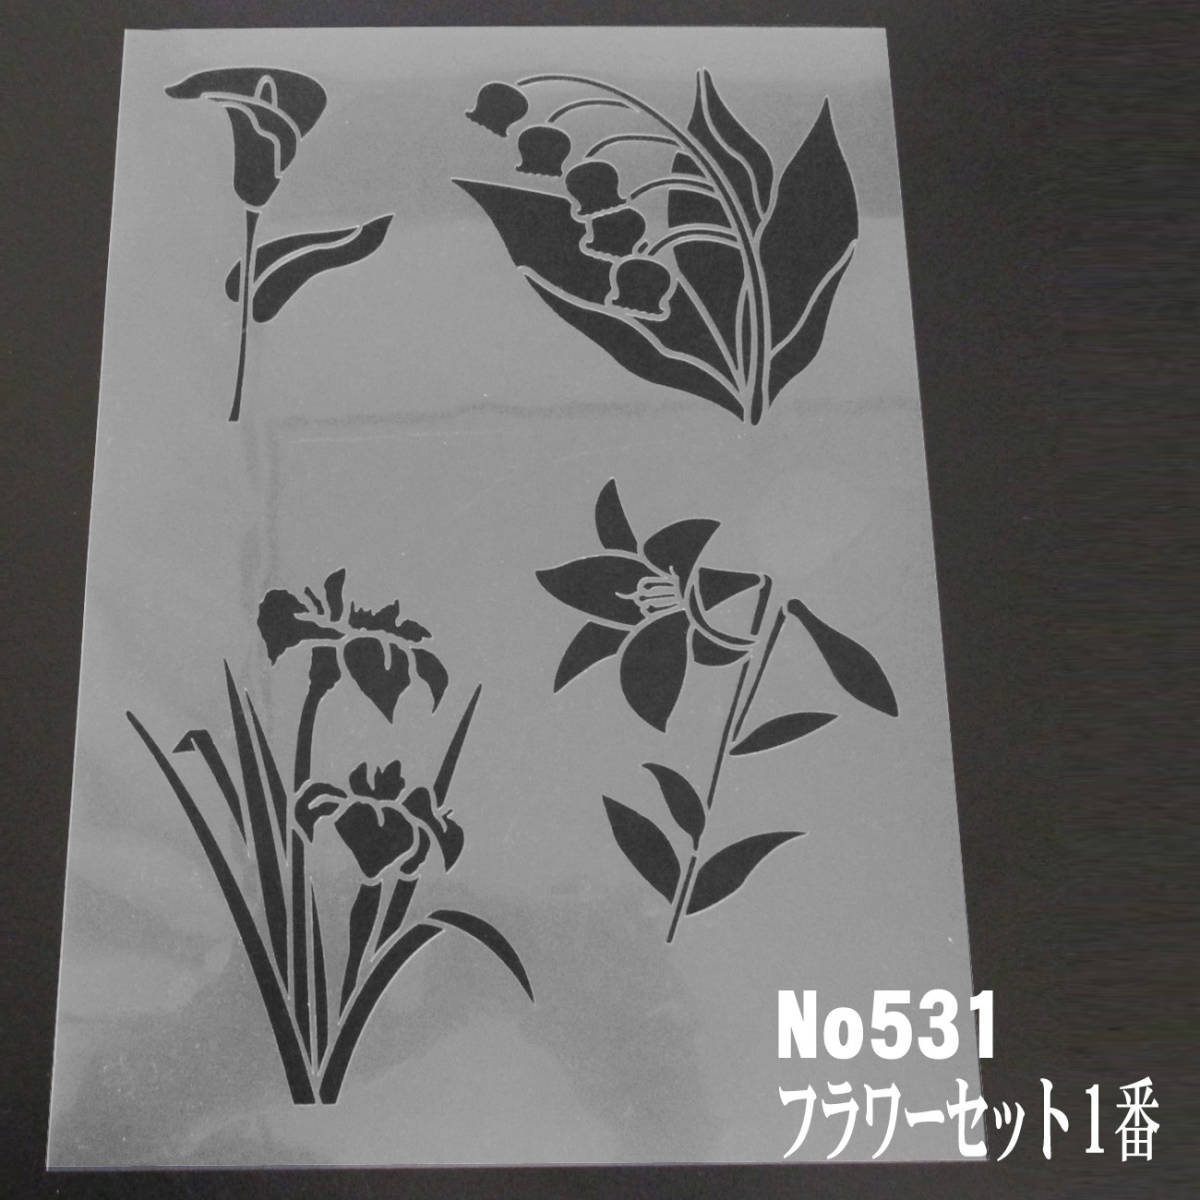 * цветок сборник иллюстраций цвет колокольчик орхидея .. 100 . цветок комплект Flowerset1 номер выкройки дизайн stencil сиденье NO531